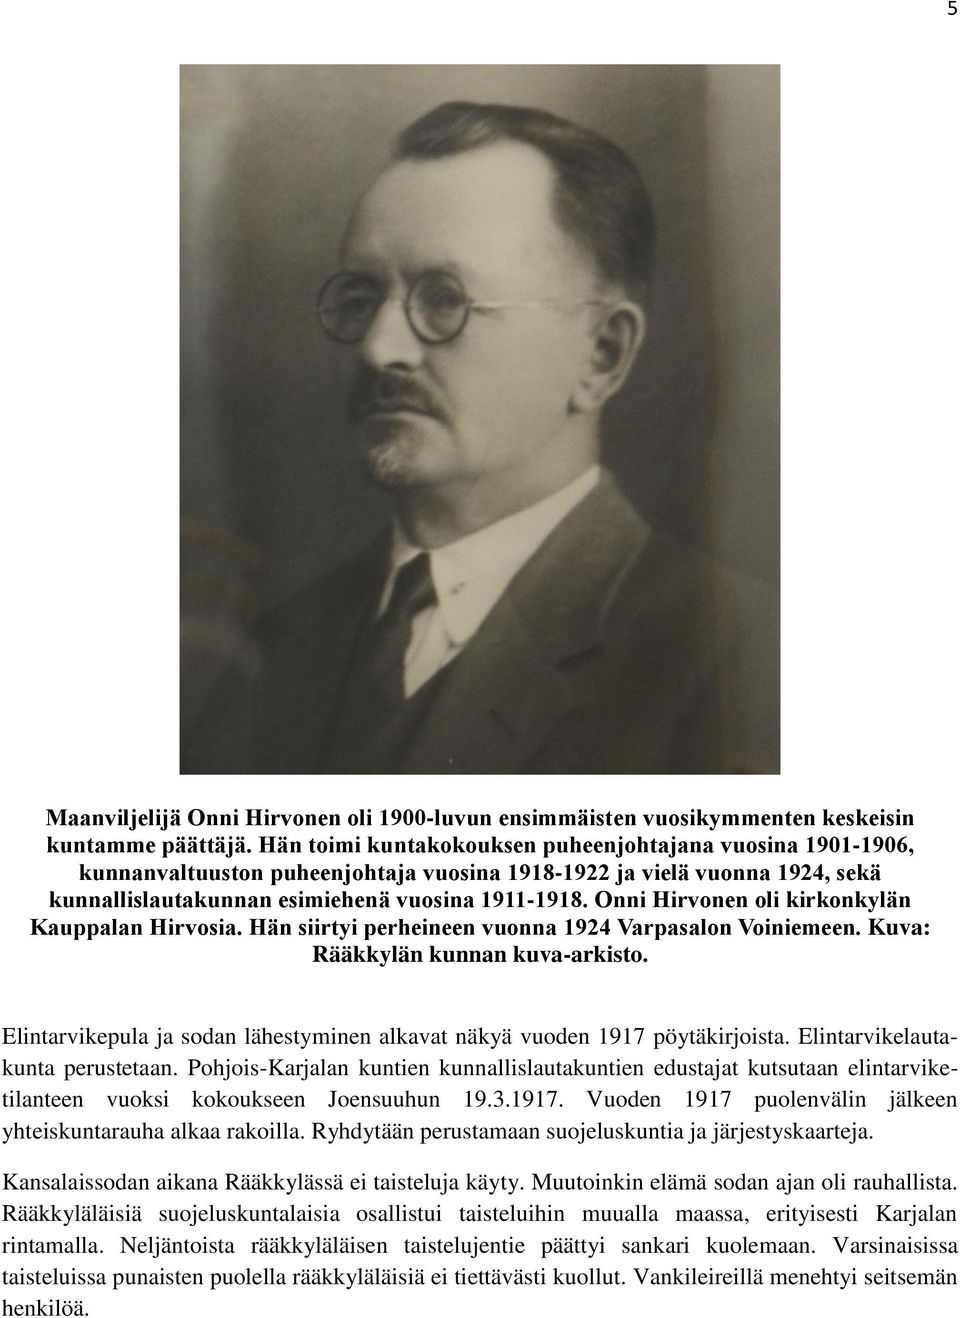 Onni Hirvonen oli kirkonkylän Kauppalan Hirvosia. Hän siirtyi perheineen vuonna 1924 Varpasalon Voiniemeen. Kuva: Rääkkylän kunnan kuva-arkisto.